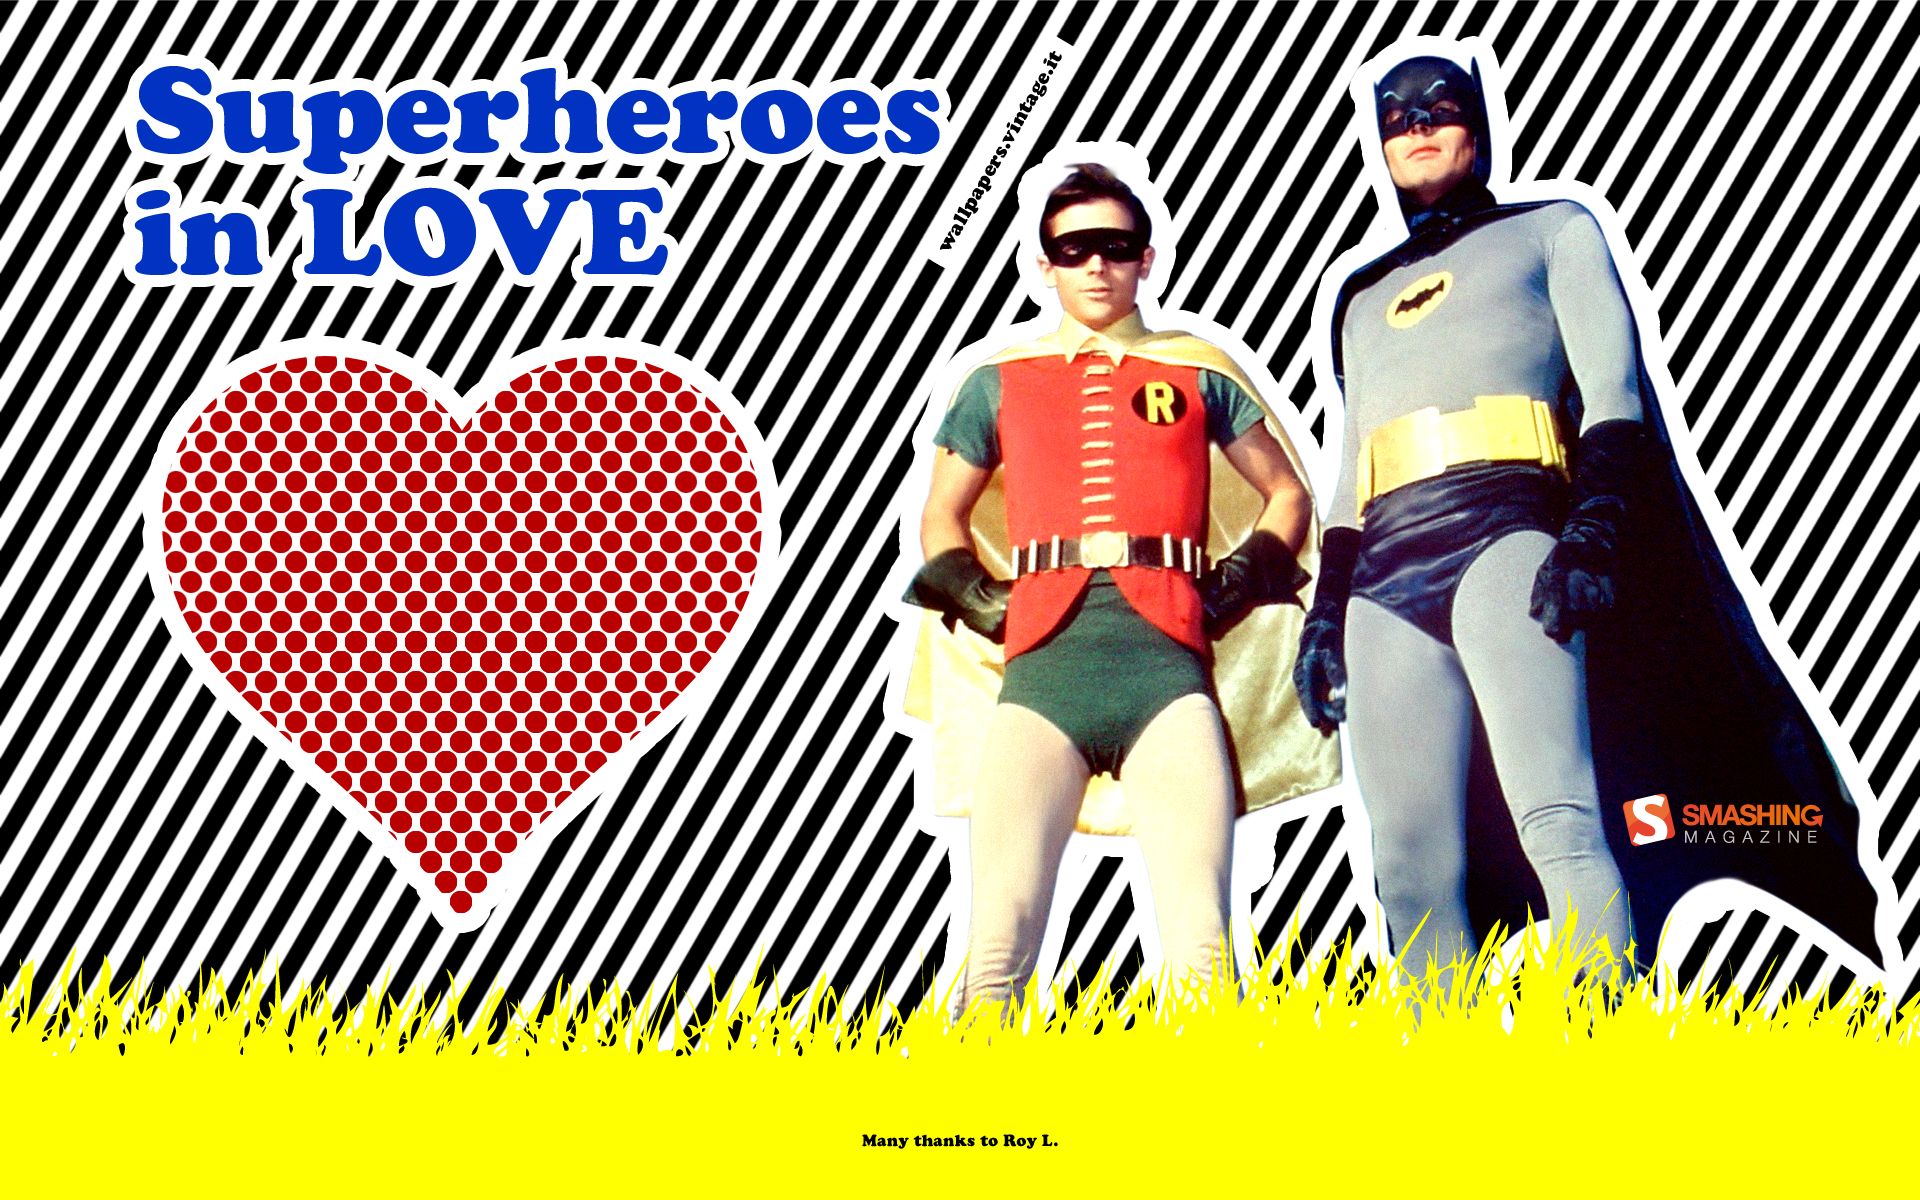 Superheroes in love - Batman & Robin wallpaper - Free Desktop HD